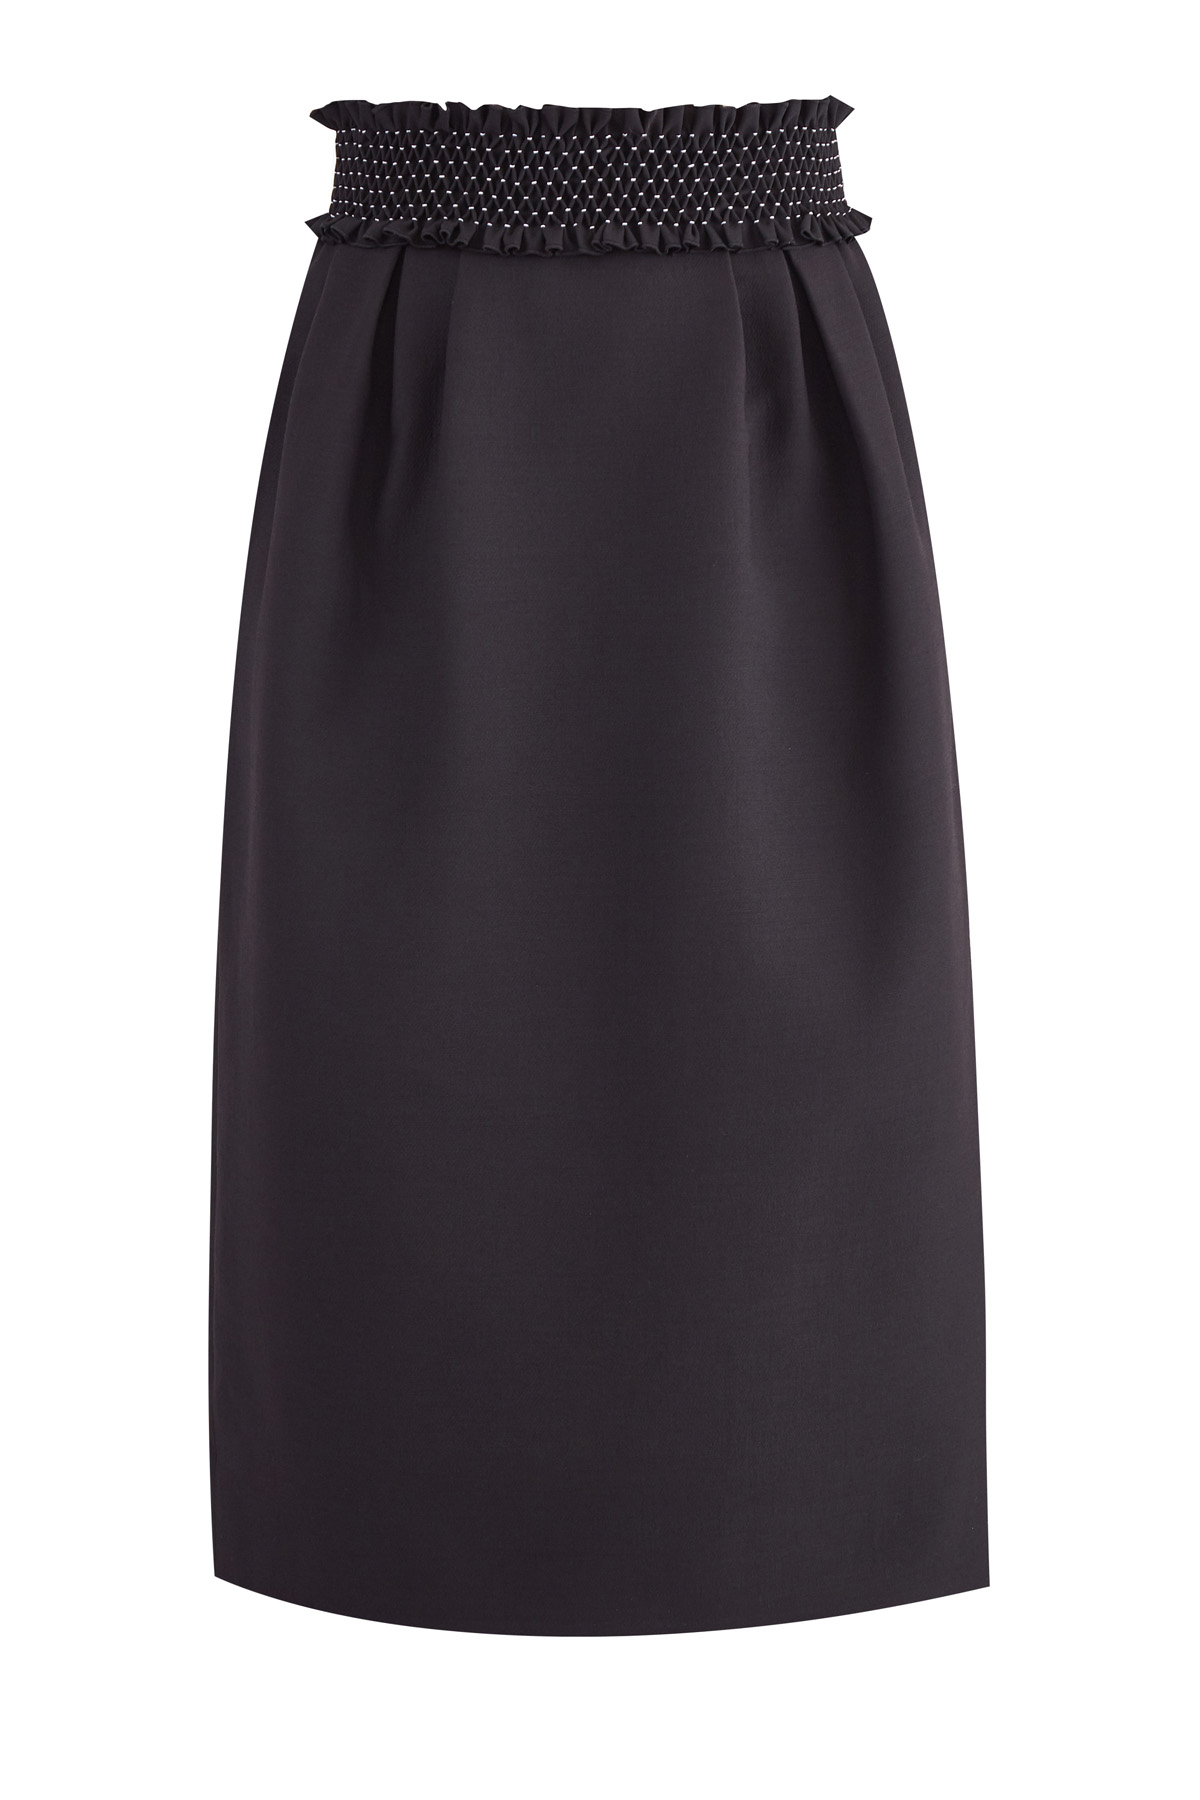 Черная юбка-колокол длины миди с фактурным поясом ручной отделки VALENTINO, цвет черный, размер 42 - фото 1